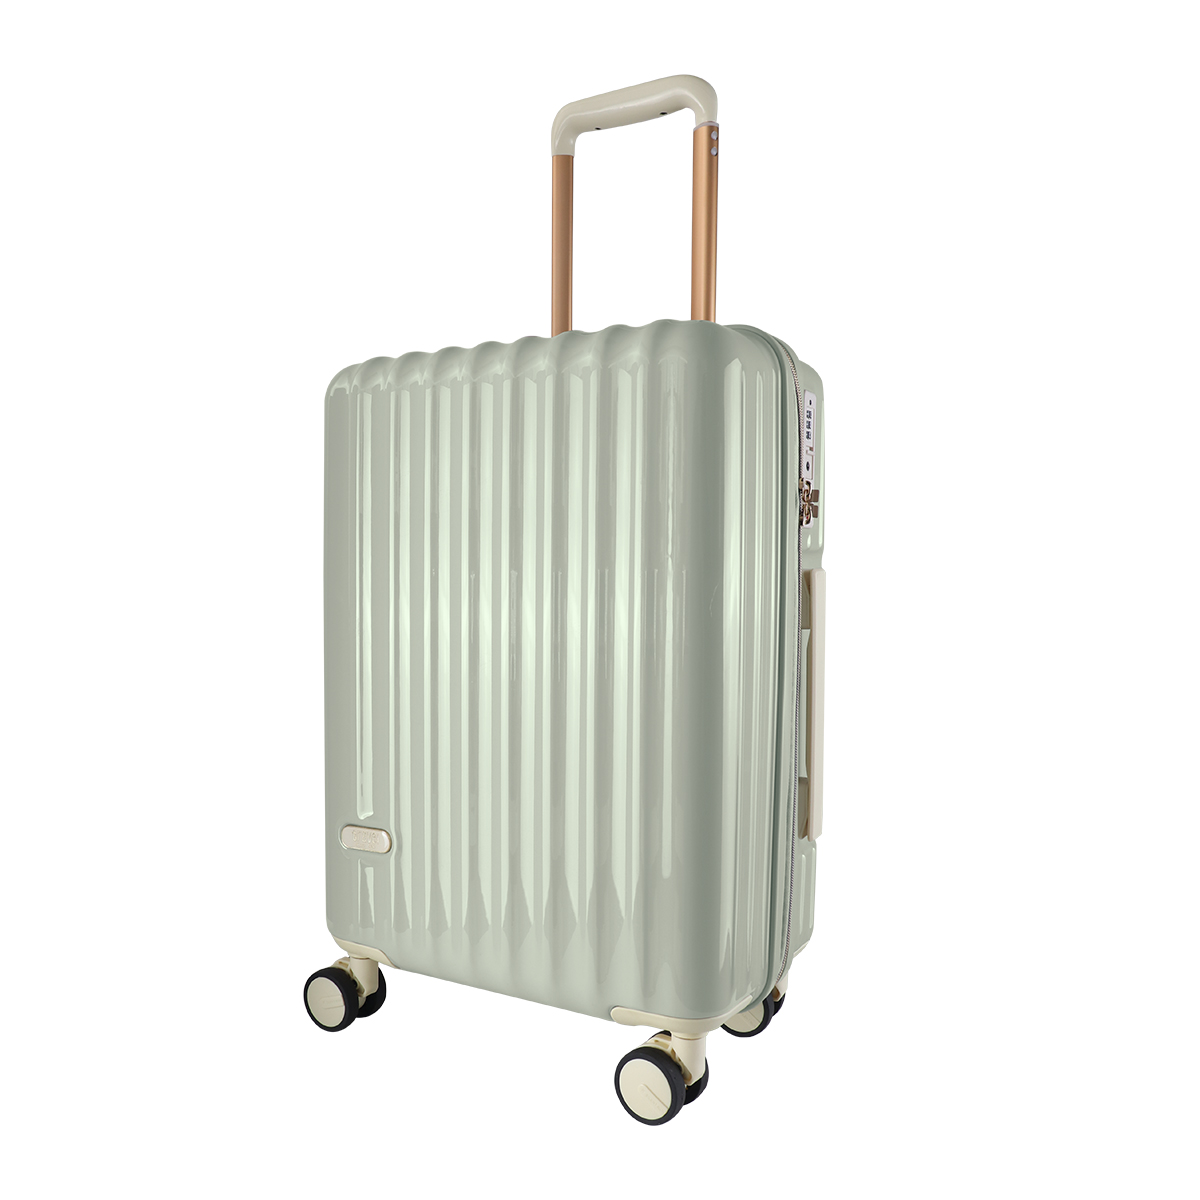 スーツケース 軽量 Sサイズ 39L 1〜2泊 ピンク 機内持ち込みサイズ TSAロック おしゃれ ...